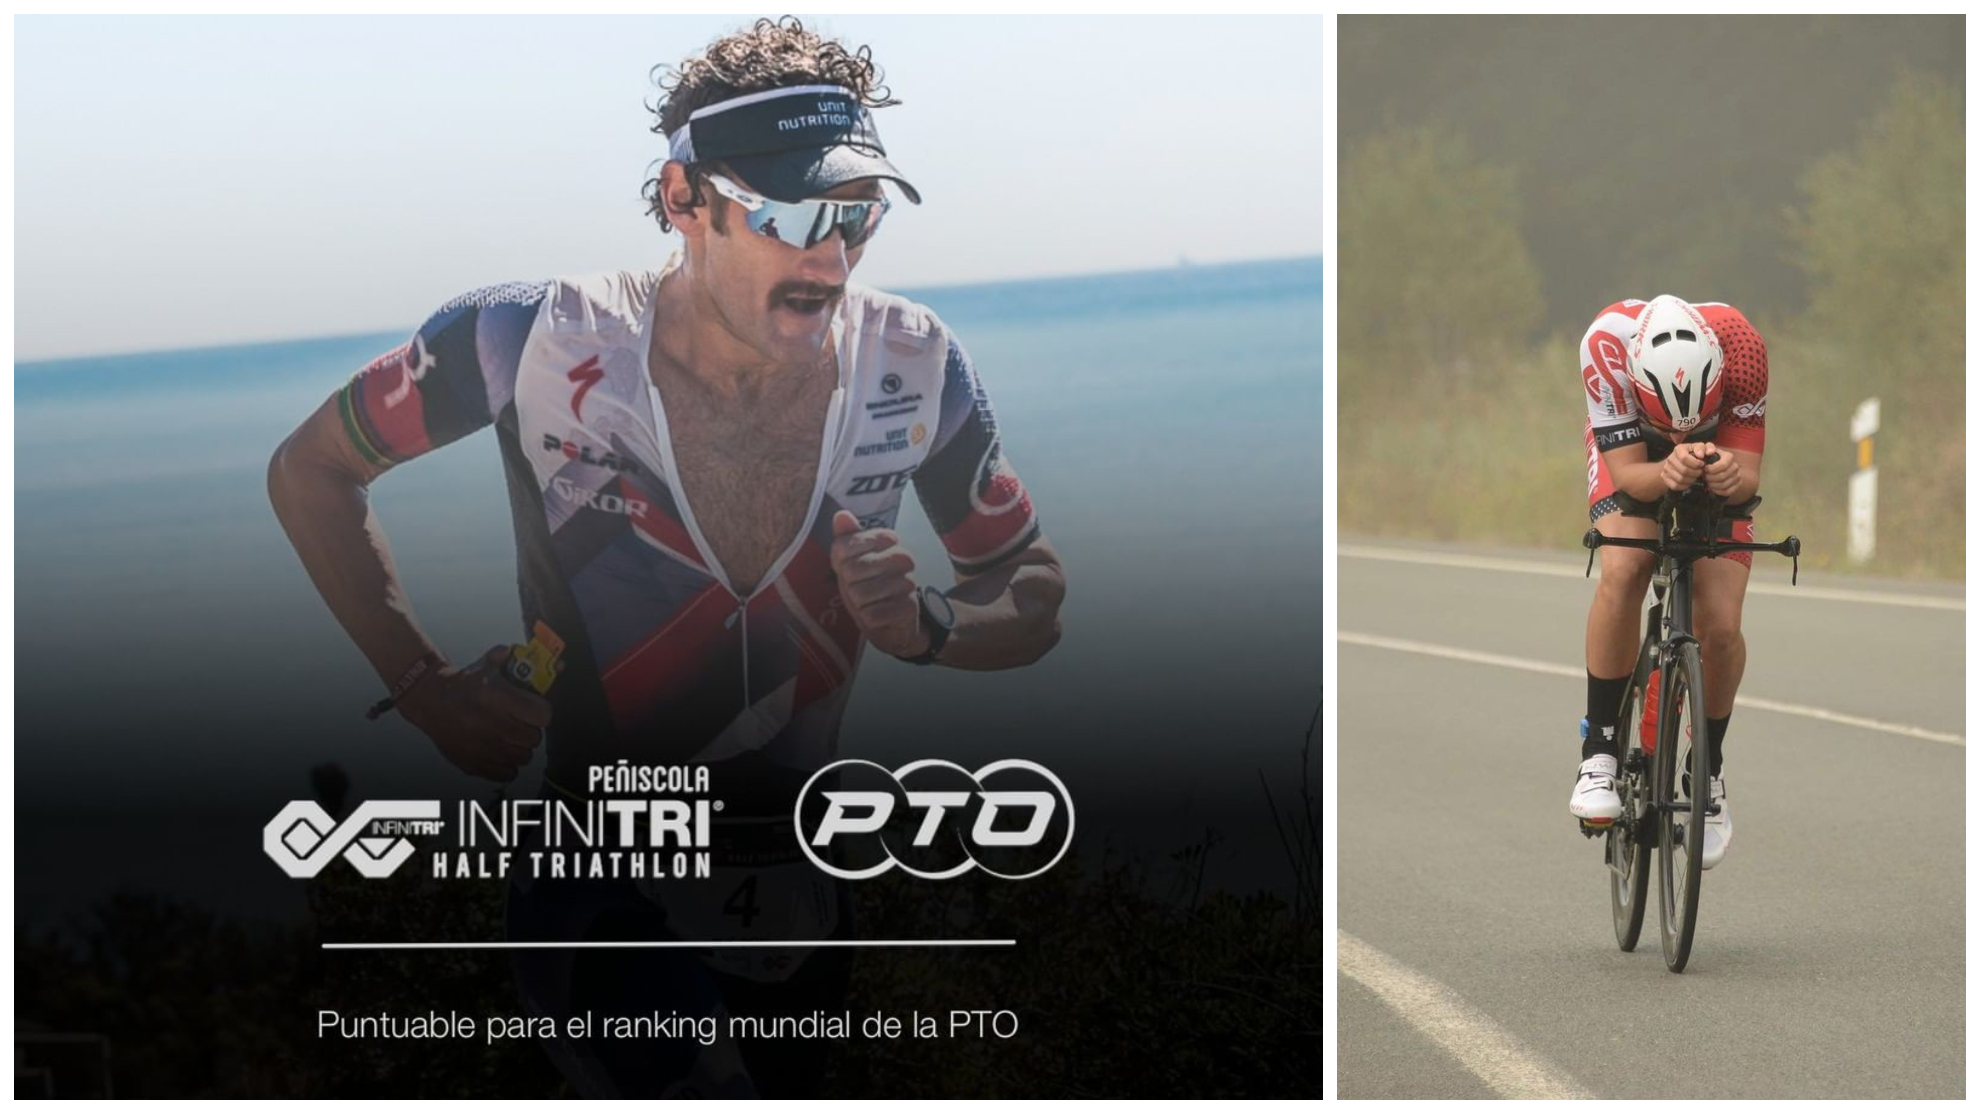 Infinitri Half Triathlon Peñíscola será puntuable para el ranking de la PTO